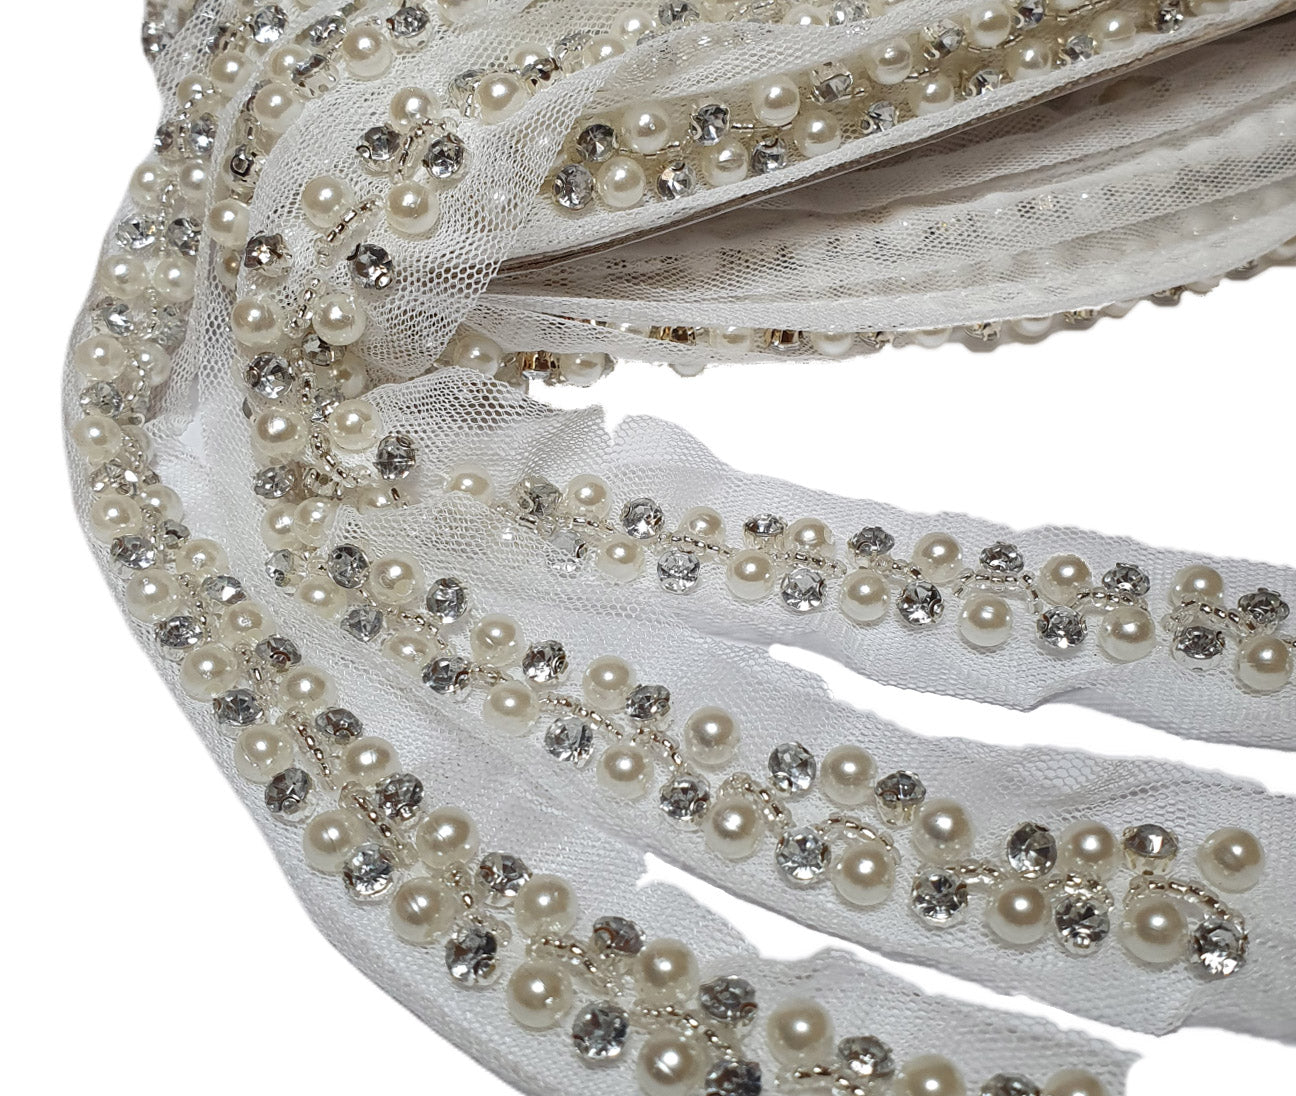 Nastro elegante per vestiti cerimonia con base tulle e ricamo perle e strass dettaglio